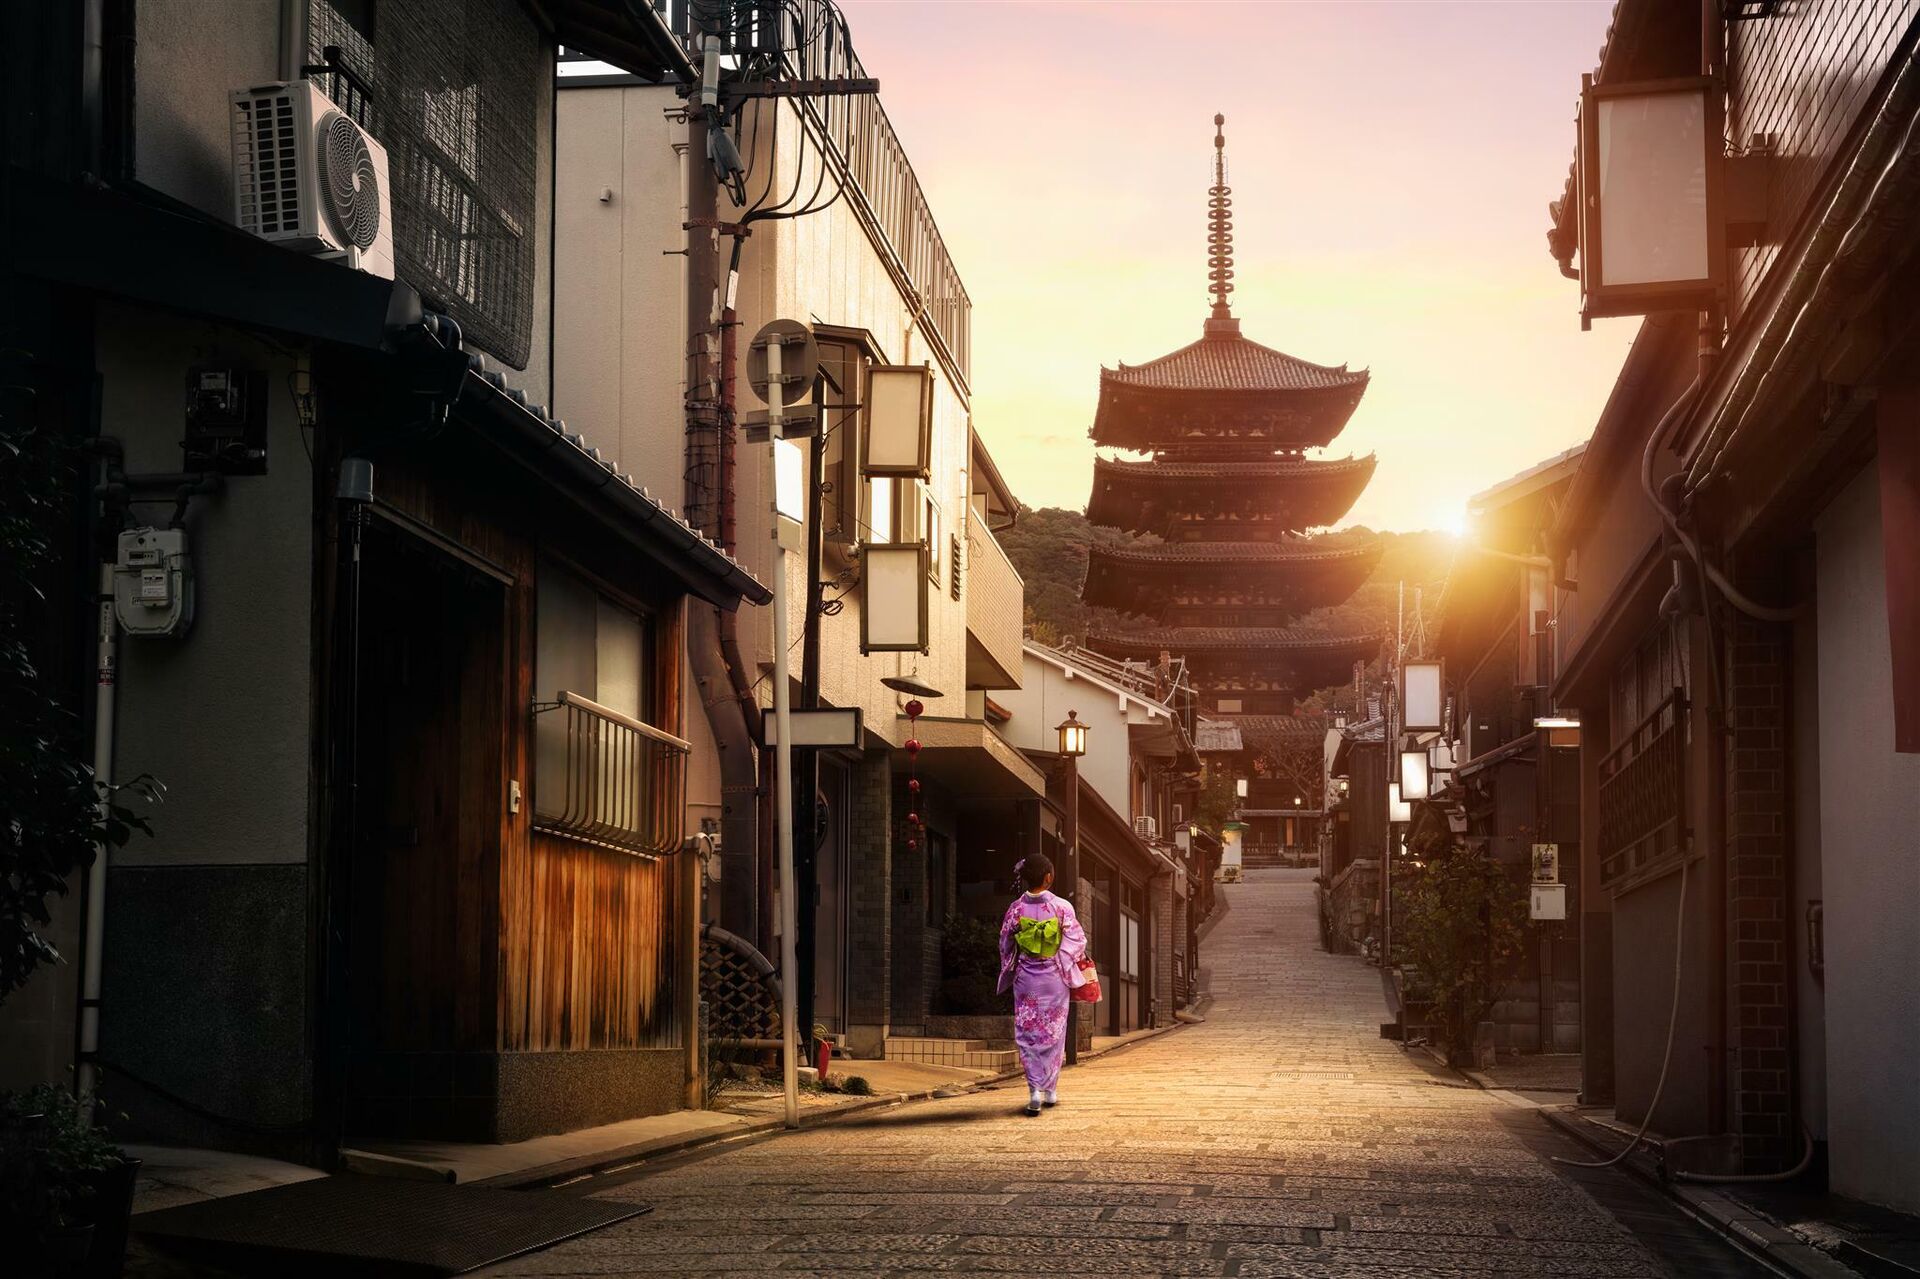 Улица Саннензака в Киото, Япония  - РИА Новости, 1920, 08.09.2020